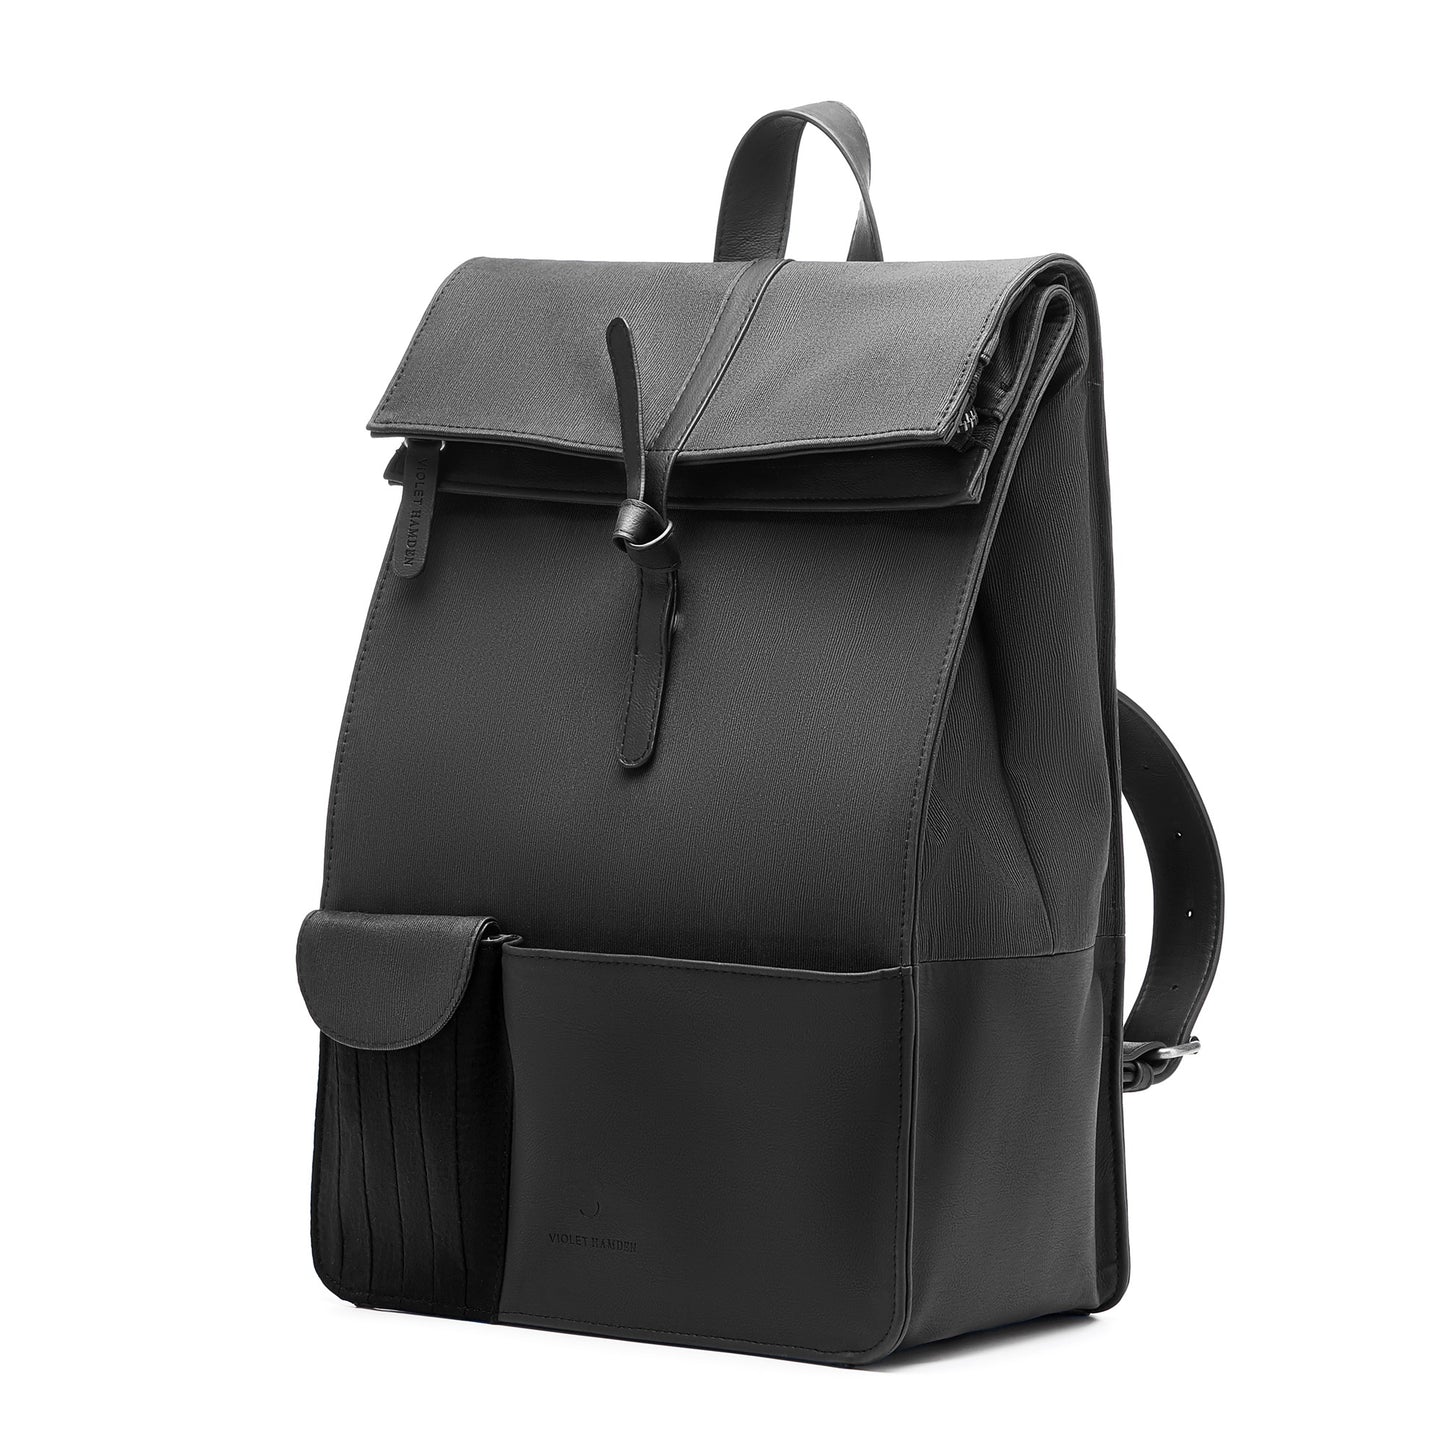 Essential Bag sac à dos noir avec compartiment pour ordinateur portable de 15 pouces